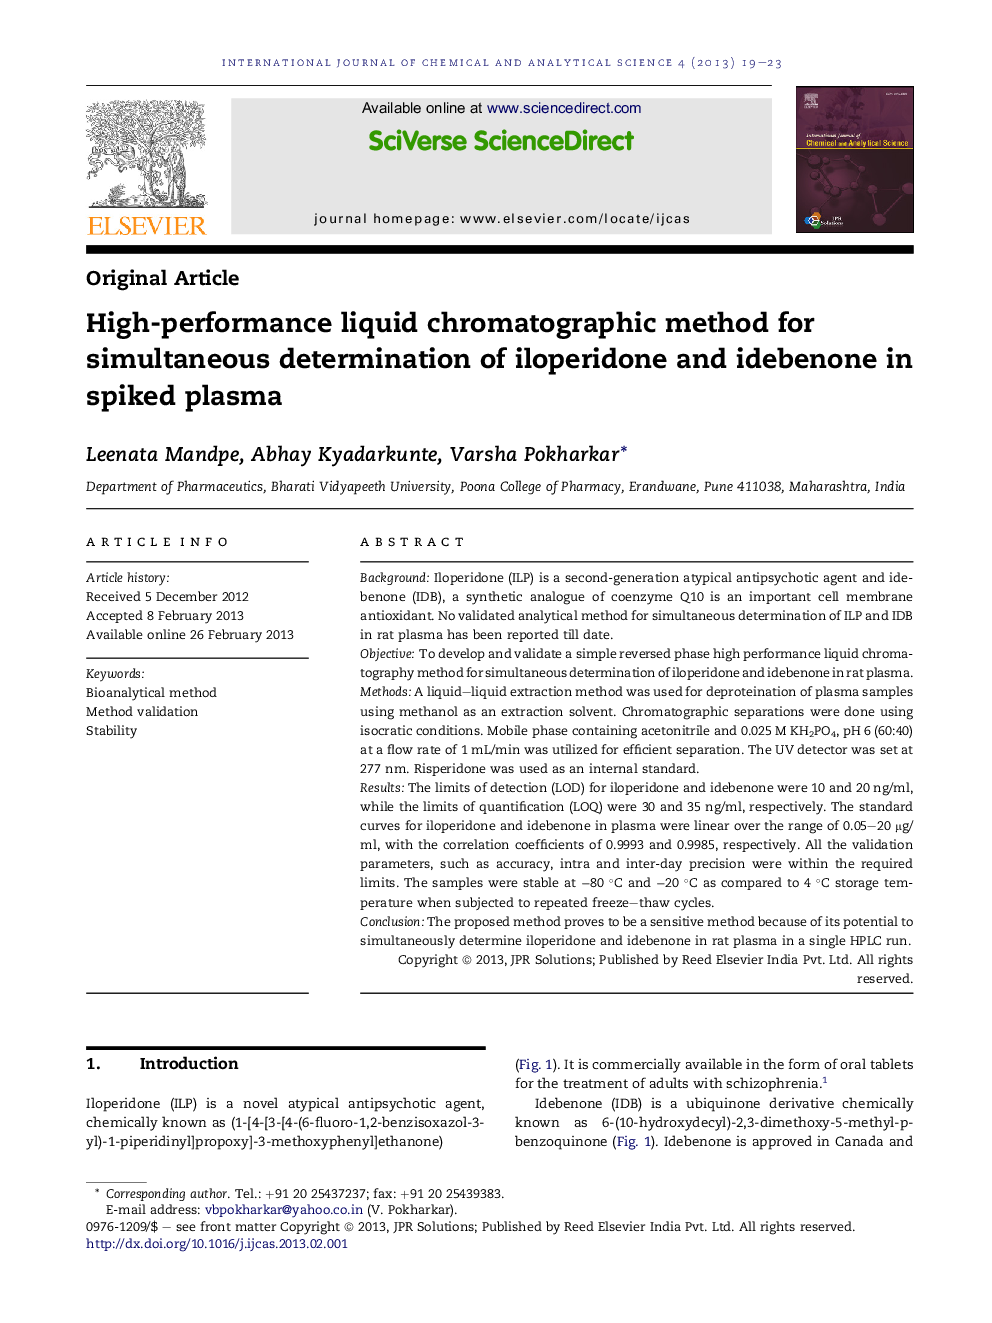 روش کروماتوگرافی مایع با کارایی بالا برای تعیین همزمان ایلپریدون و اید بننون در پلاسمای اسپیک 